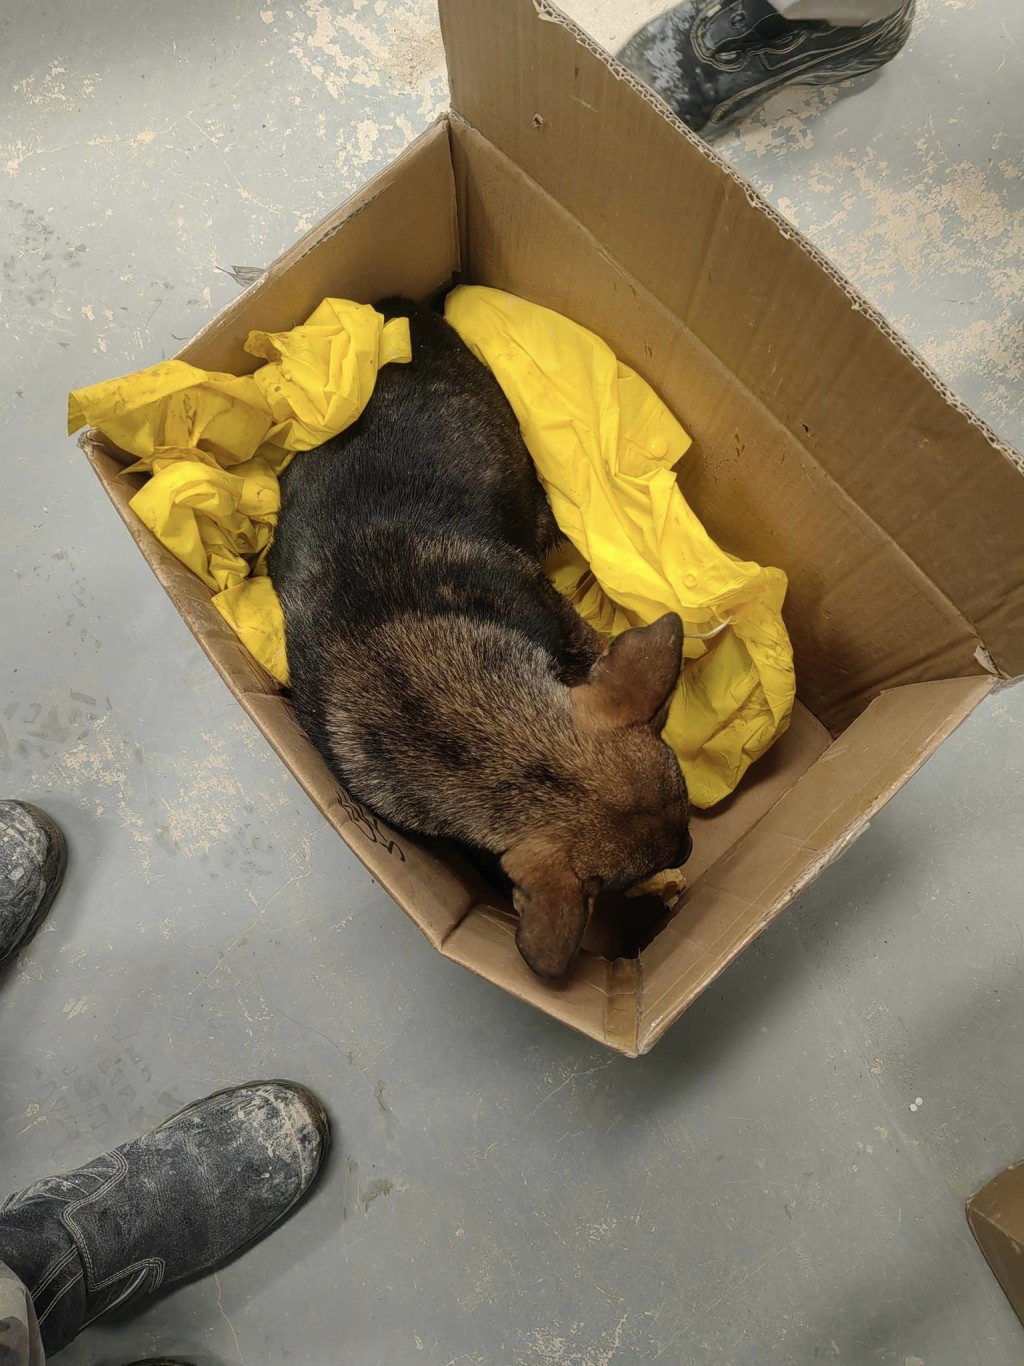 工人将狗狗带到工地写字楼，放在纸箱和外套内取暖。FB群组「天下猫猫领养及义工讨论区」